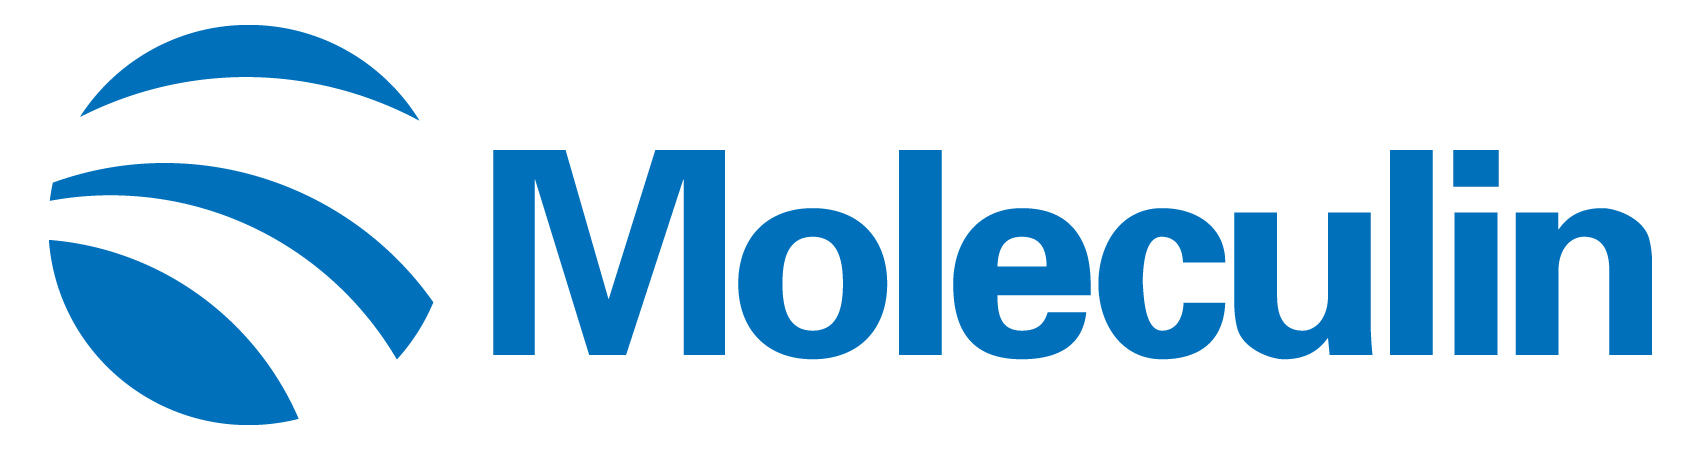 moleculin-logo_horiza47.jpg